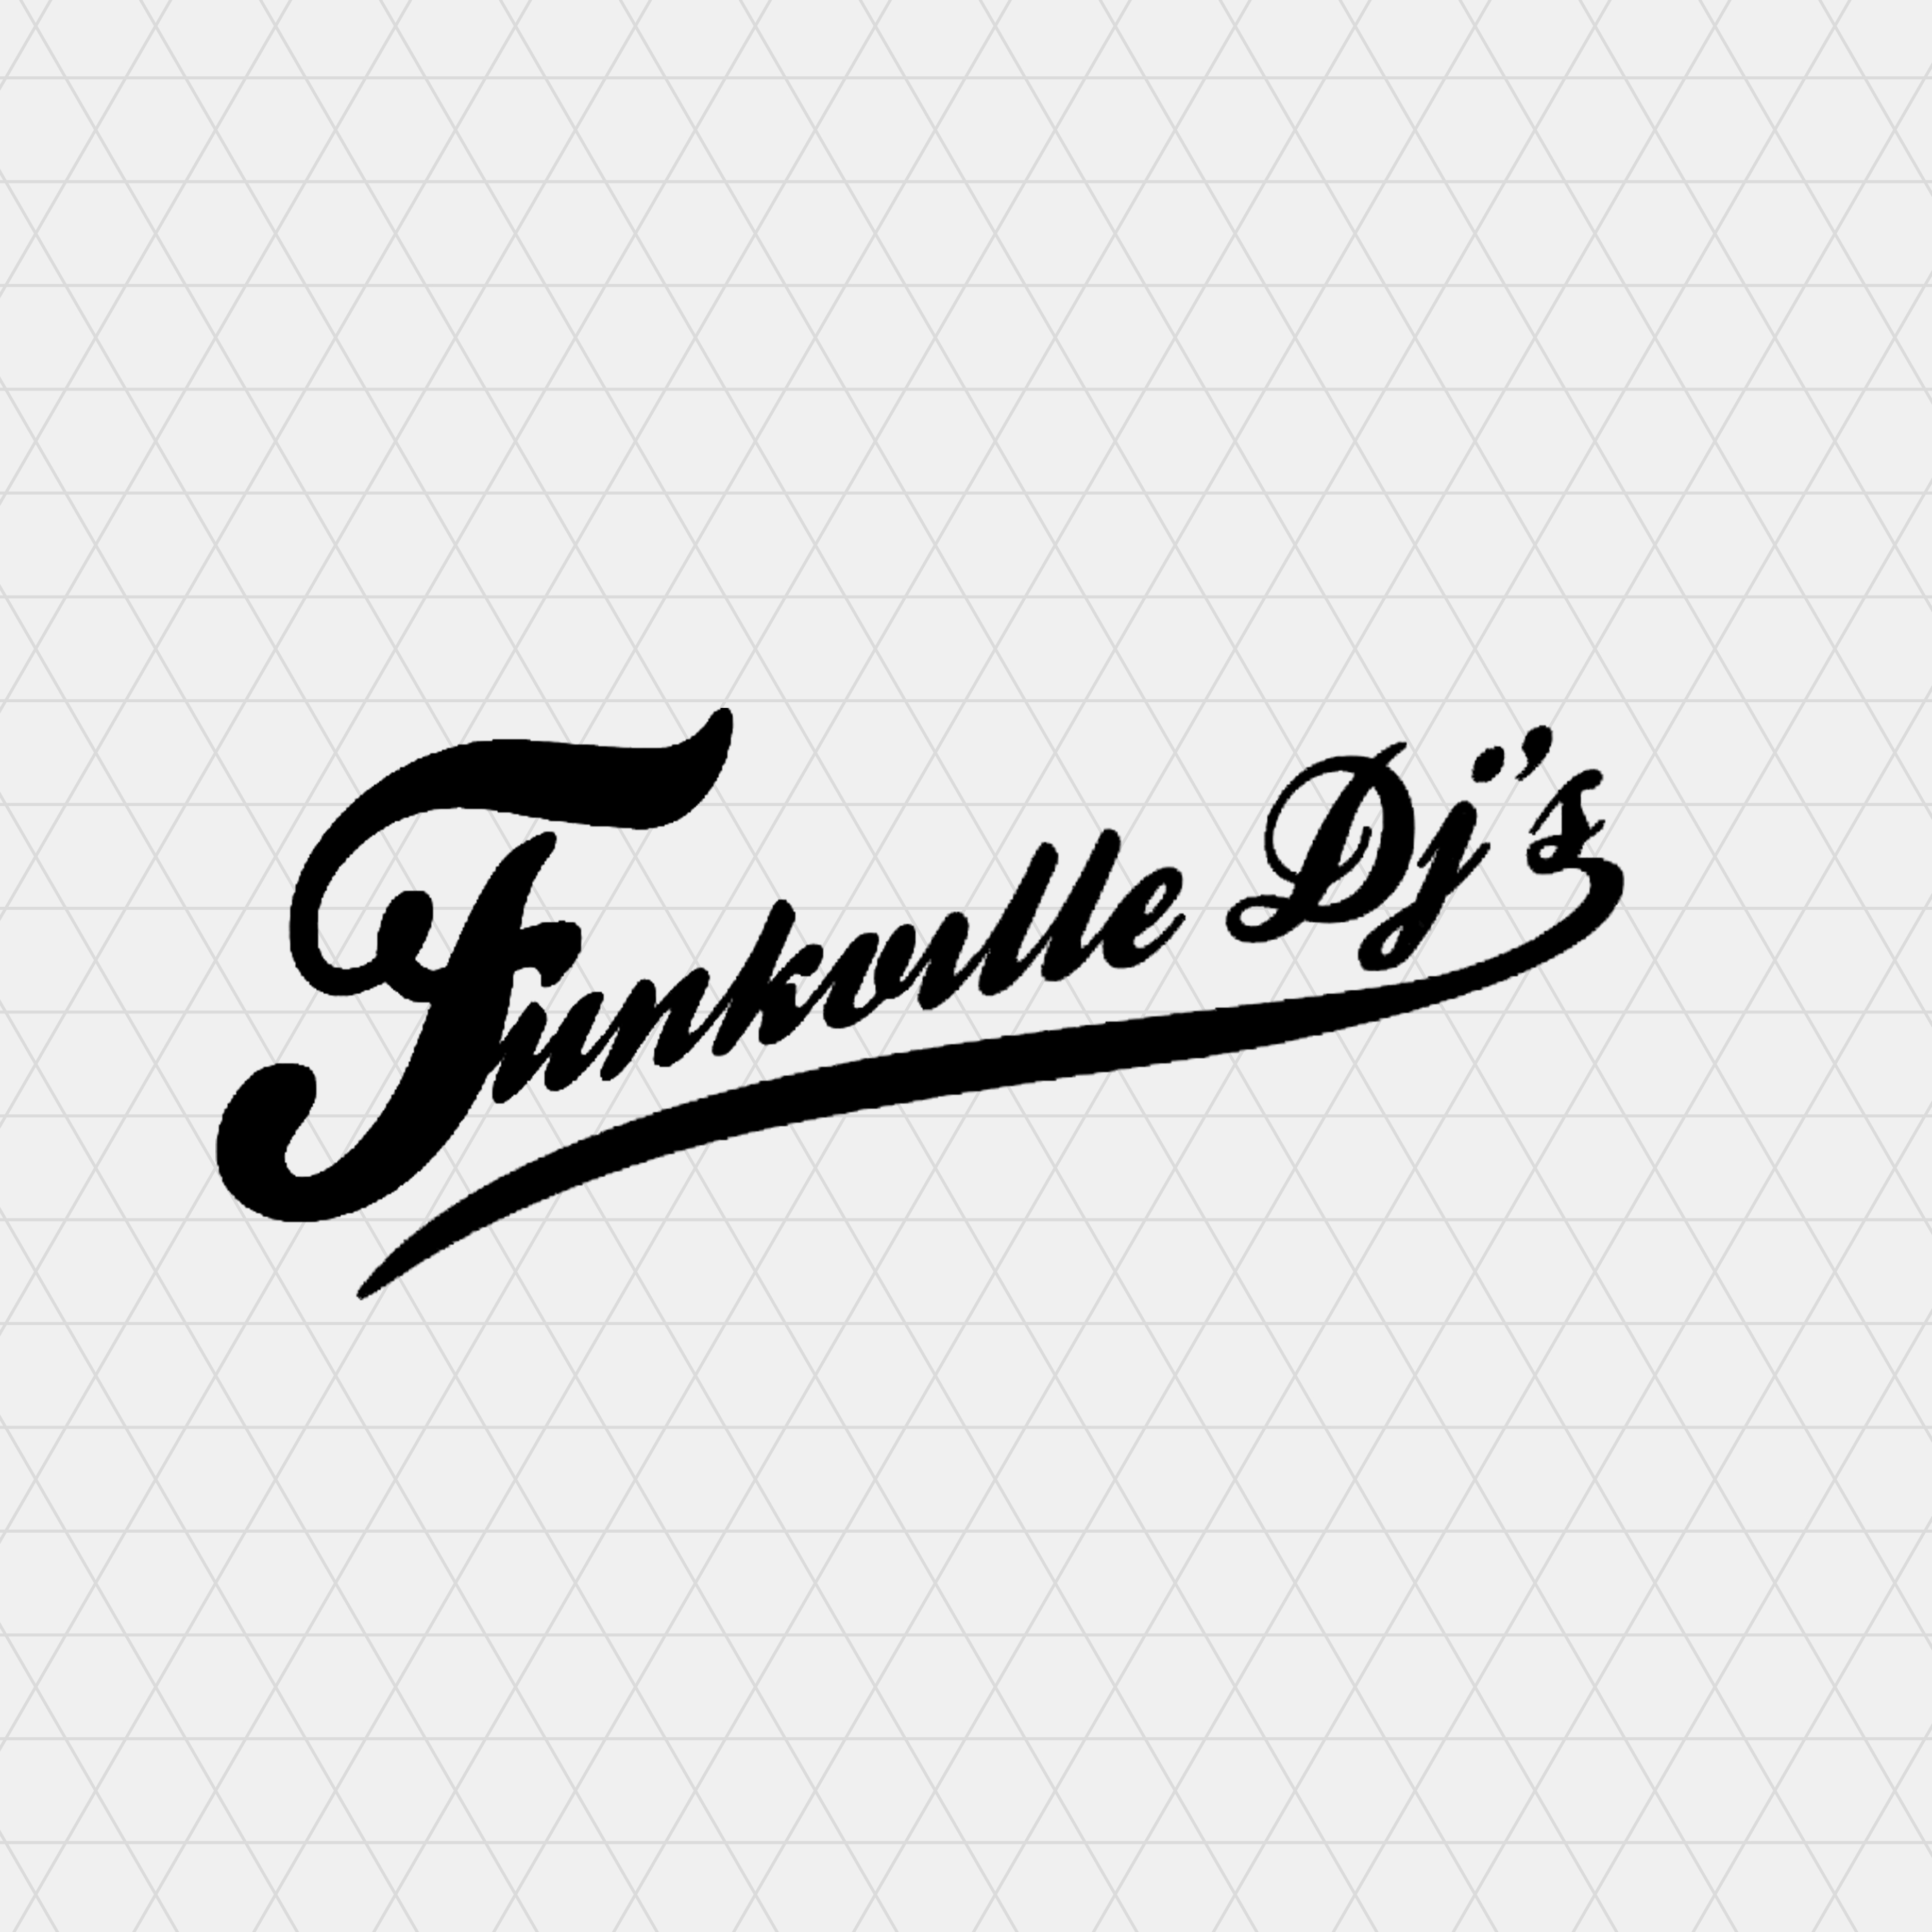 Funkville dj's: een dj set met de beste funk, r&b en soul. Hofleveranciers van sexy, zwoele en stomende grooves.